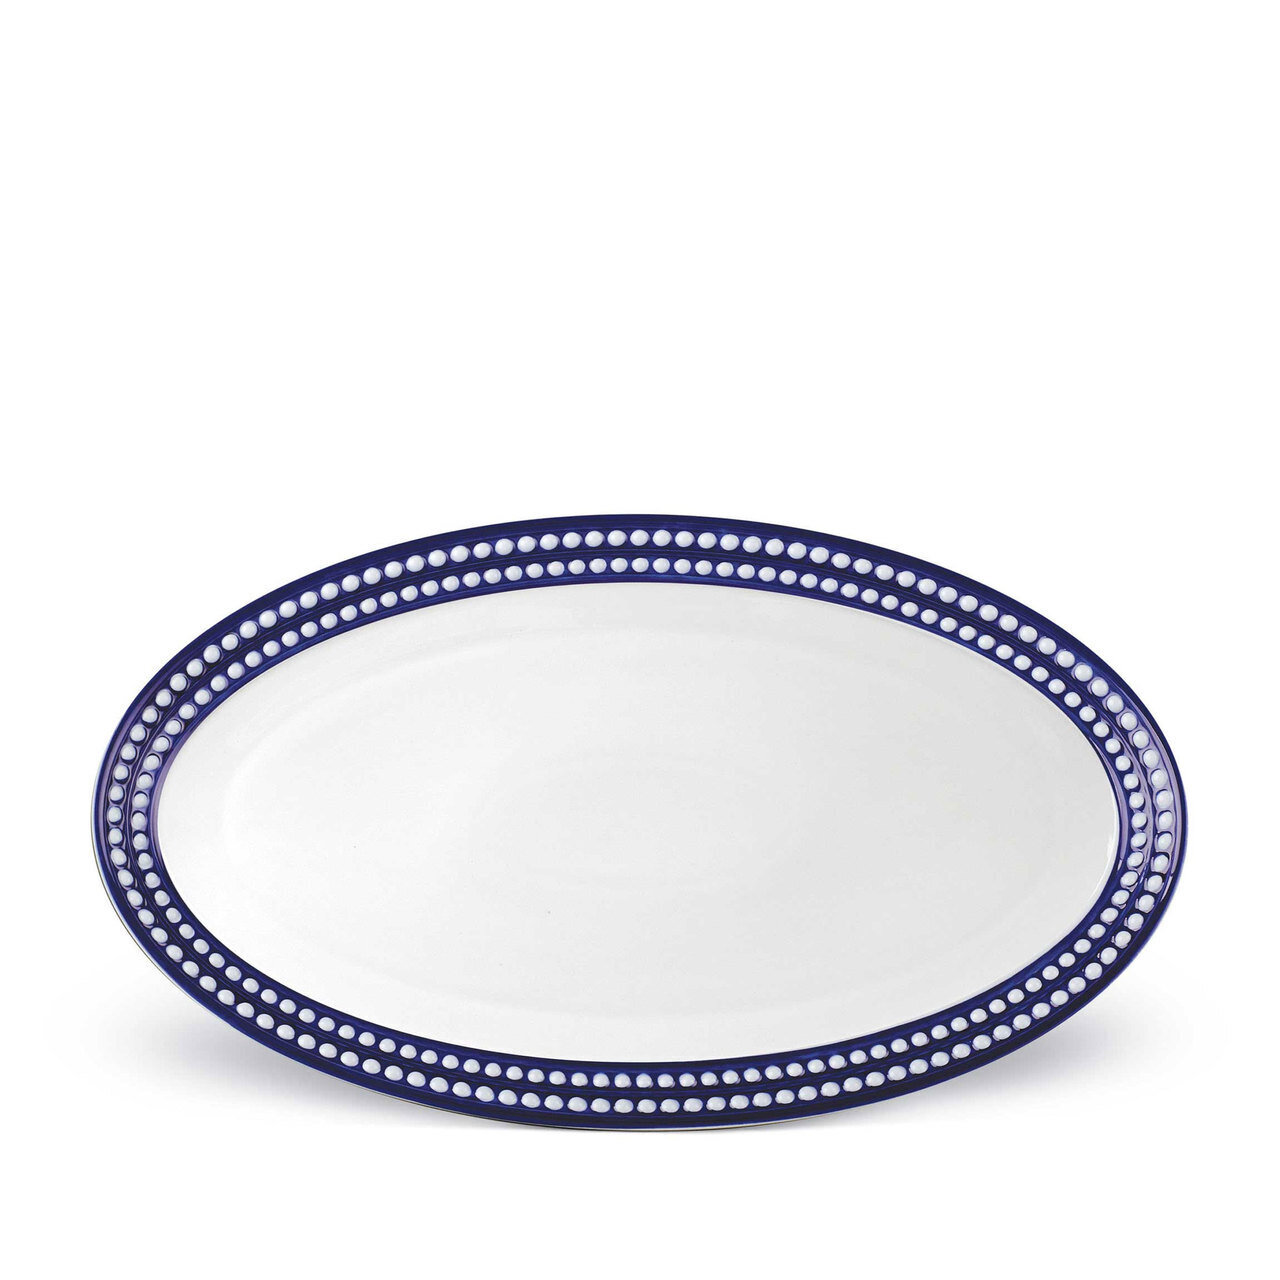 L'Objet Perlee Large Oval Platter Bleu